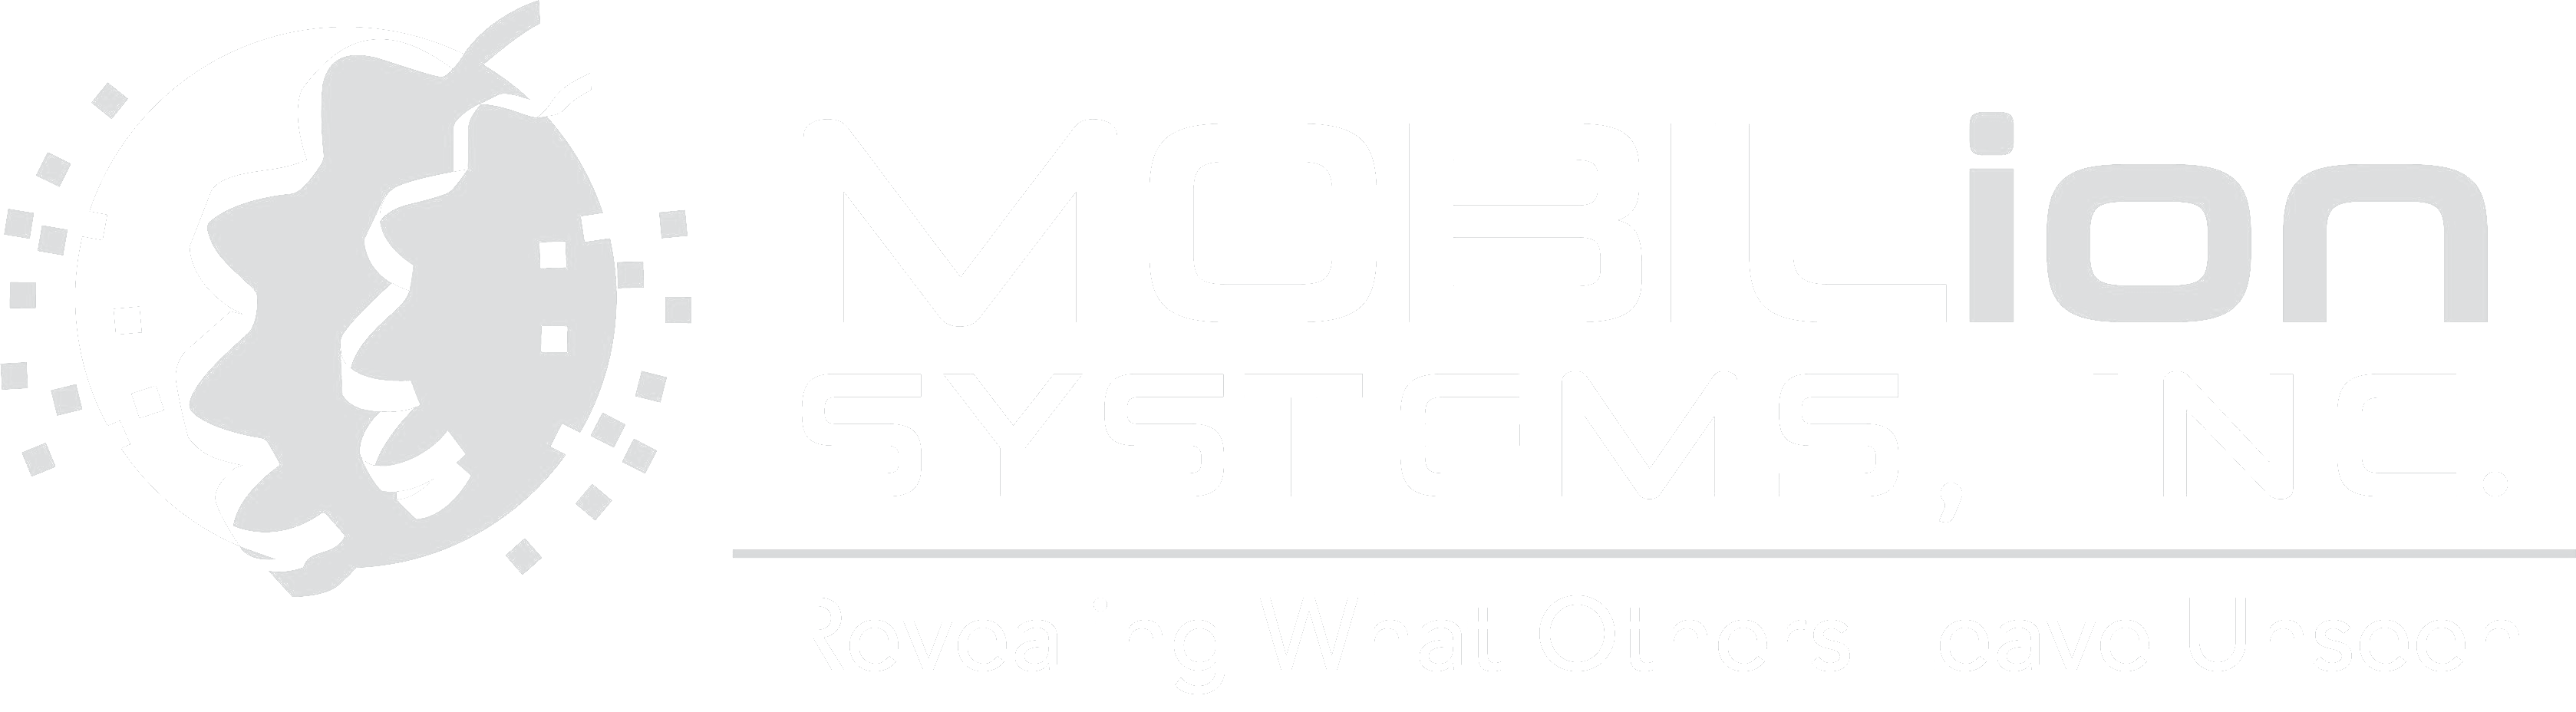 MOBILion系统标志白色